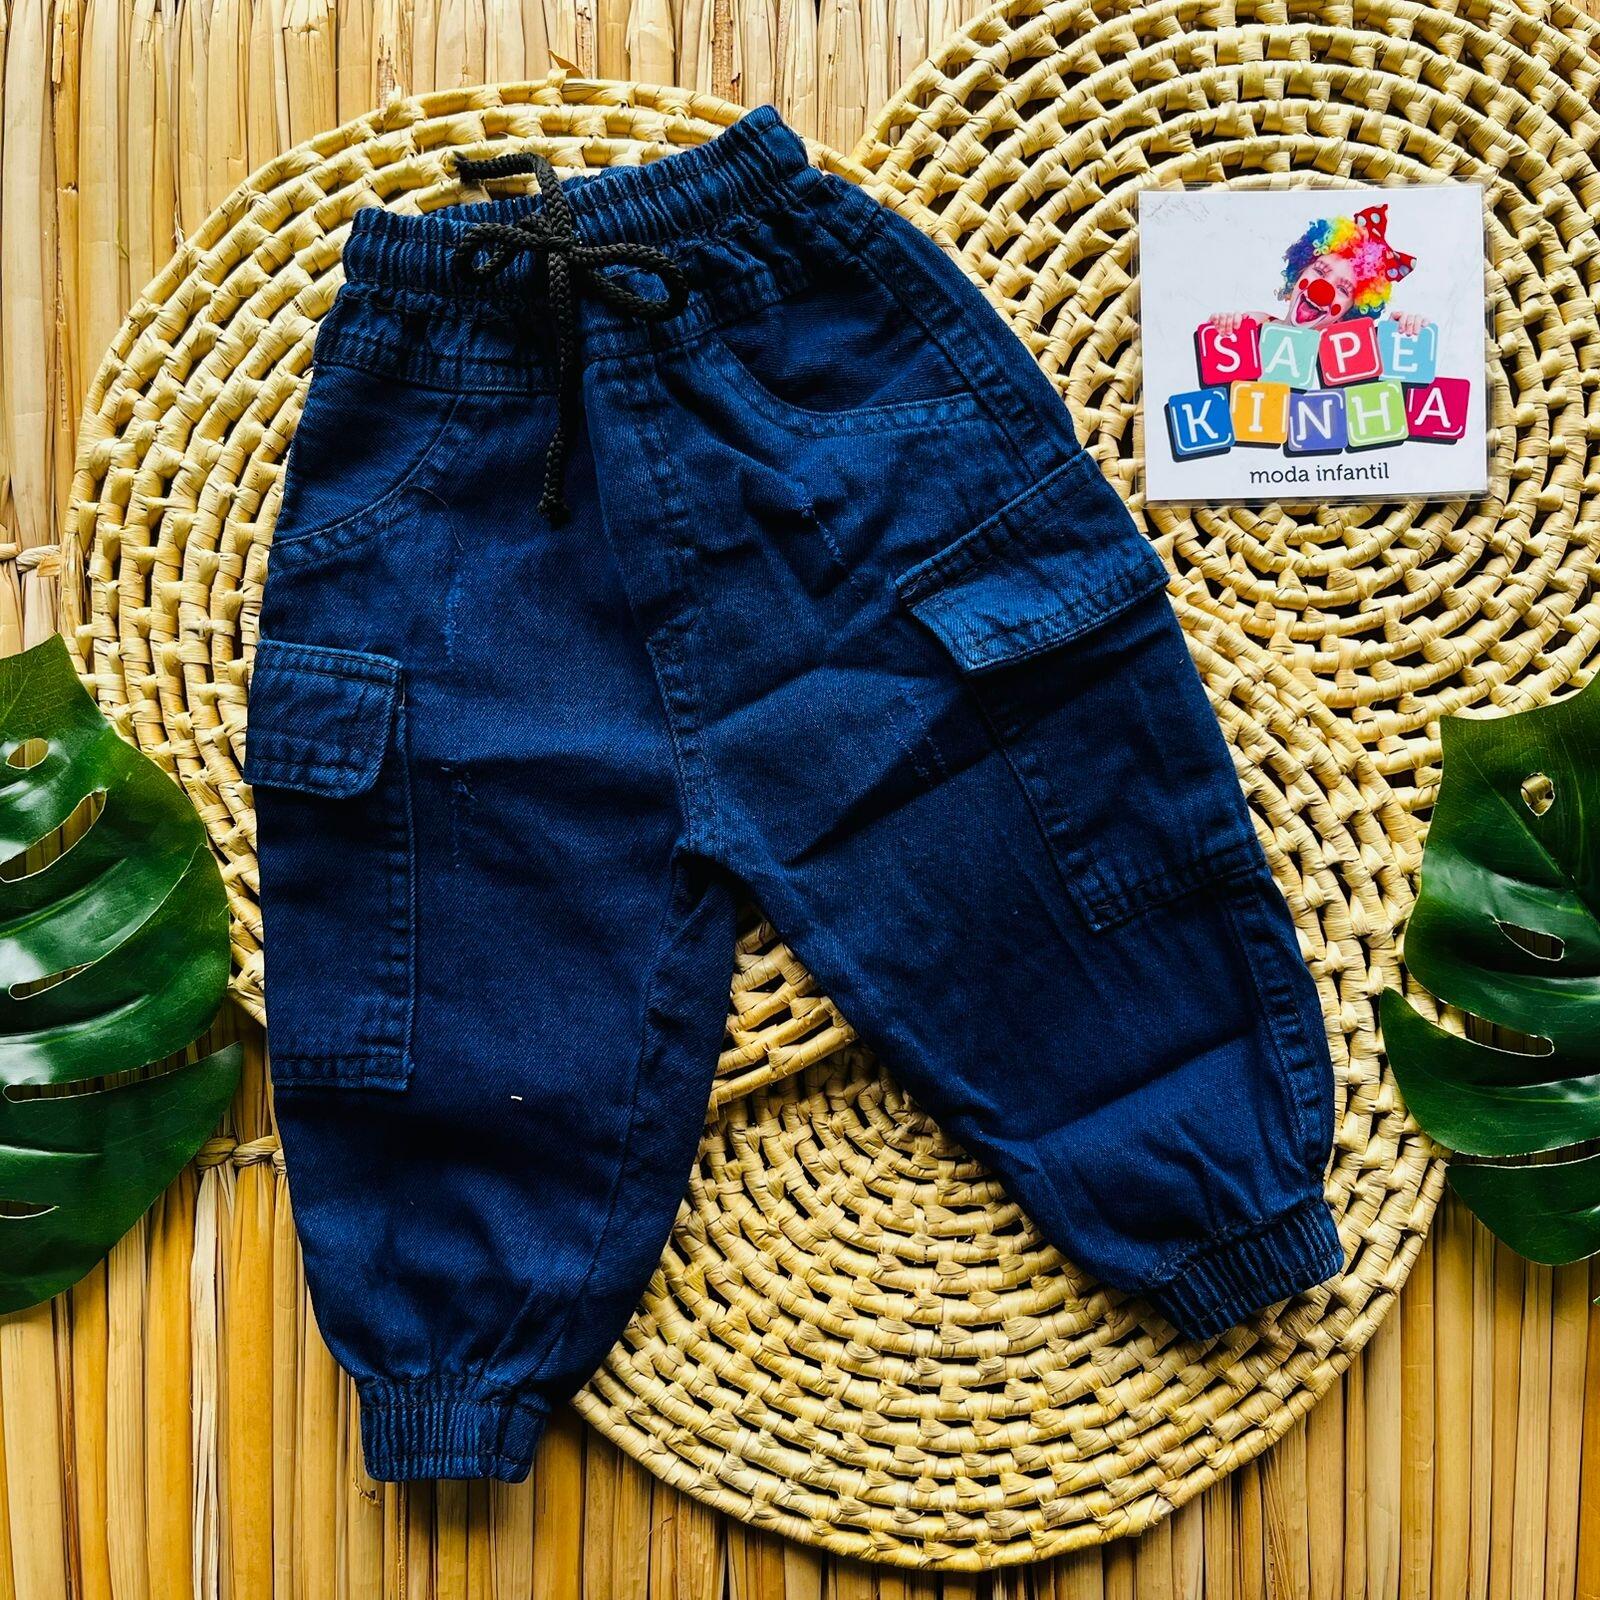 Comprar Calça jeans escuro cargo masculina (REF: 098) - Sapekinha Modas